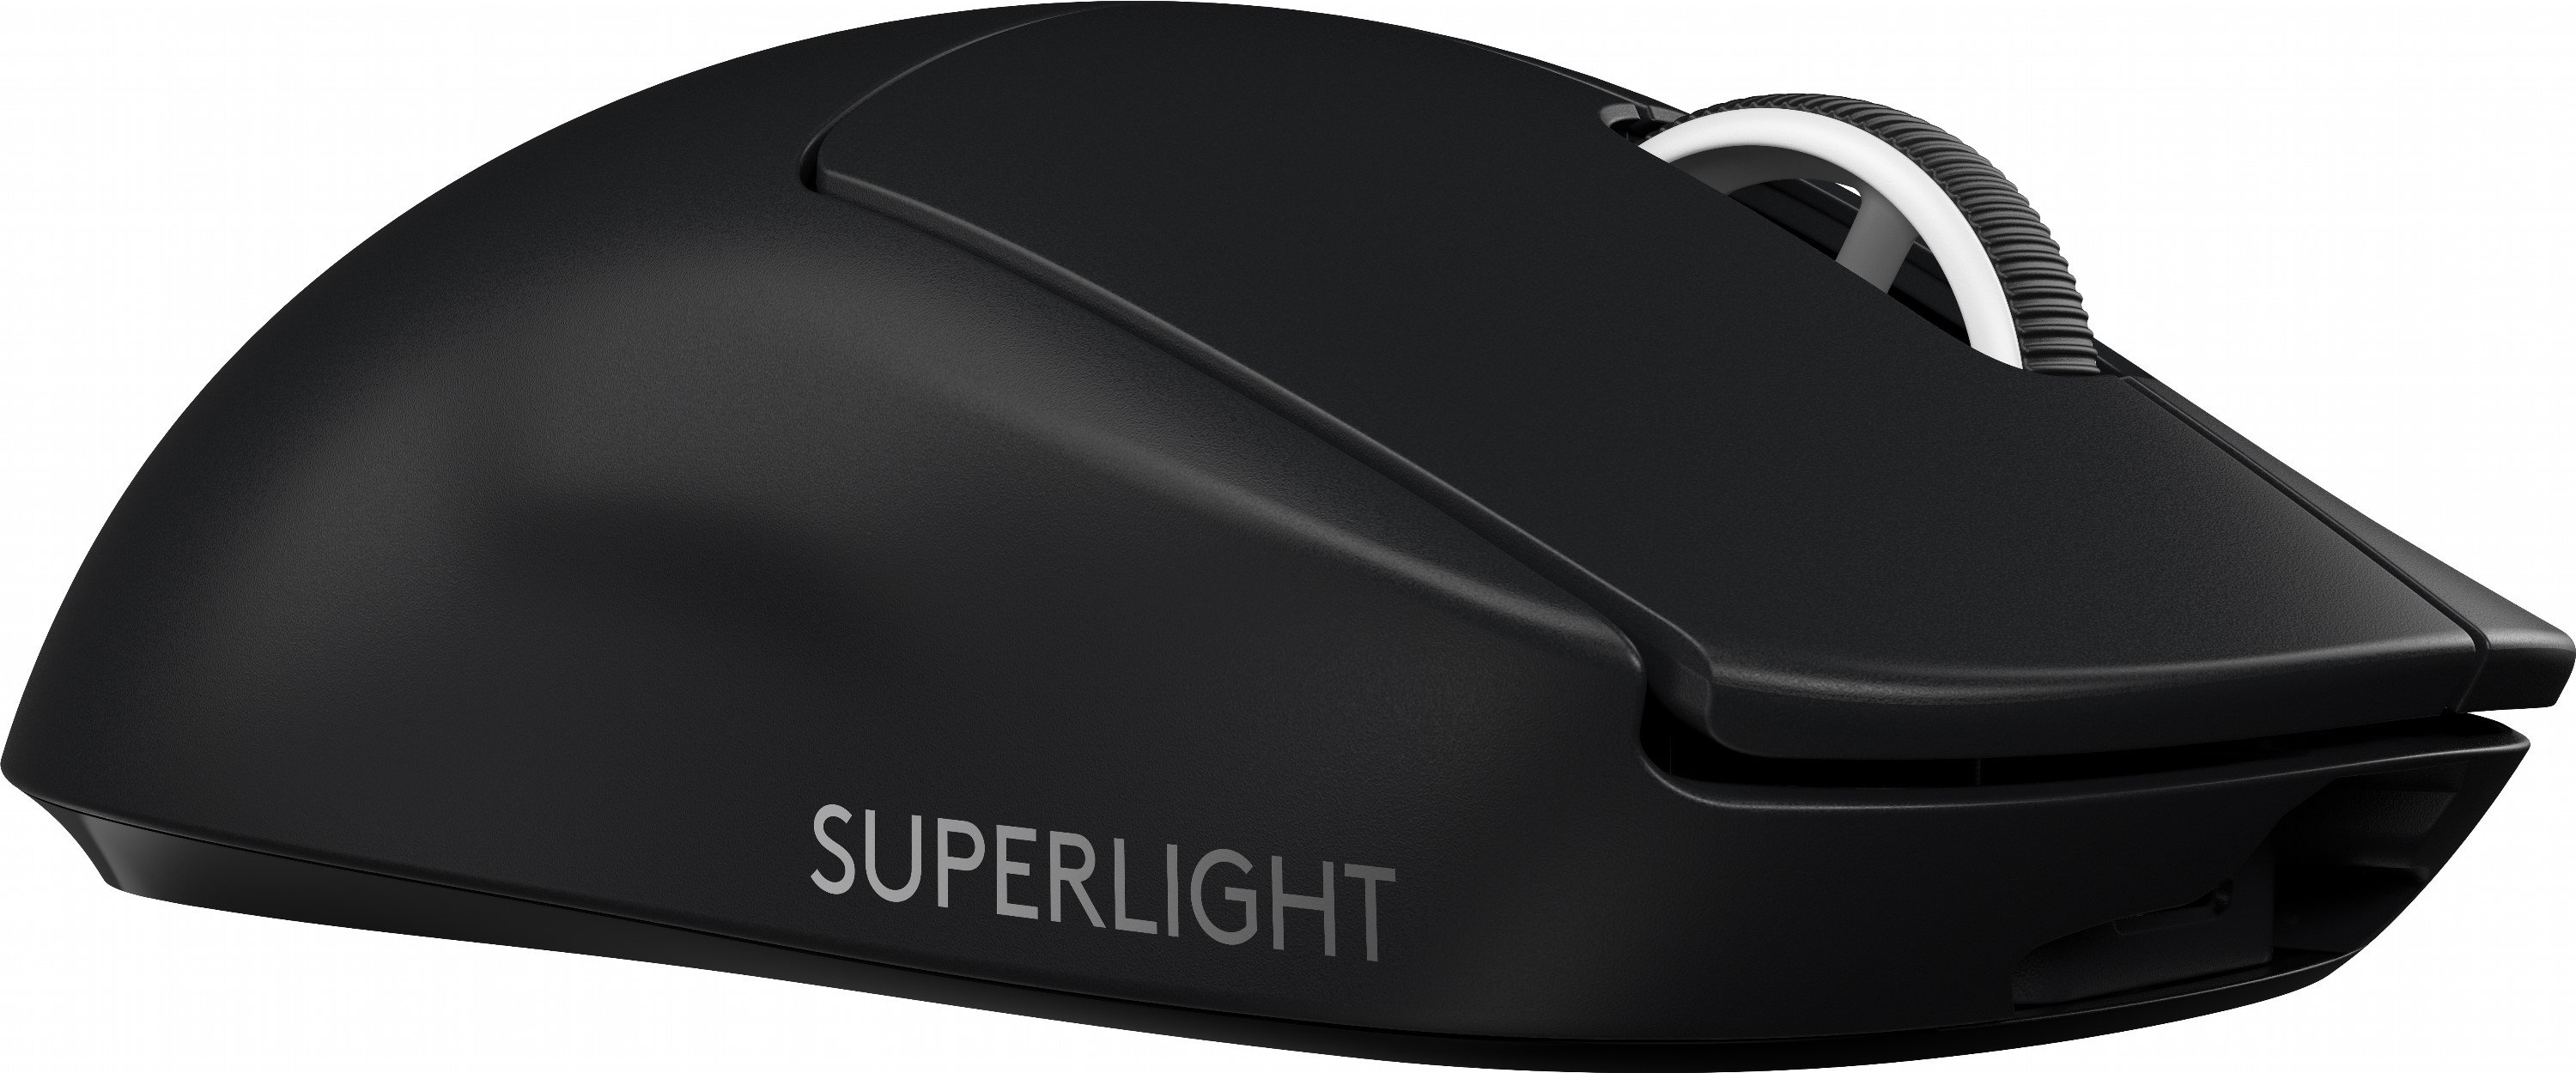 Игровая мышь logitech pro wireless. Logitech g Pro x Superlight. Logitech g Pro Wireless Superlight. Мышь Logitech 910-005880. Мышь Logitech g Pro x Superlight.